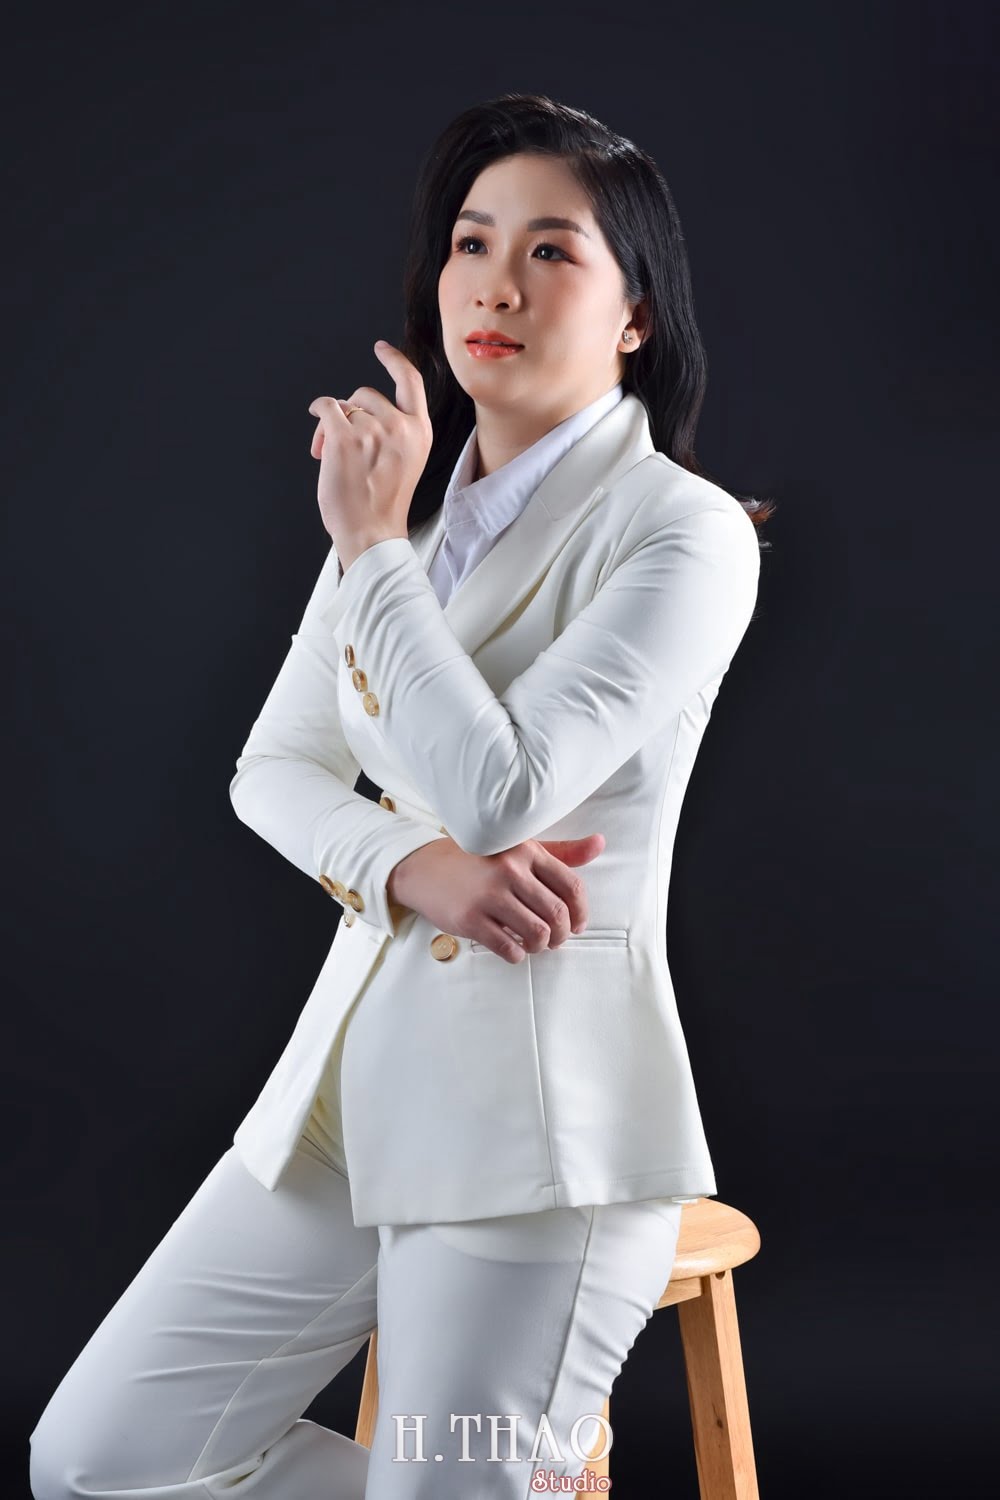 Anh doanh nhan nu 2 min - Concept chụp ảnh chân dung nữ đẹp tại Tp.HCM – HThao Studio